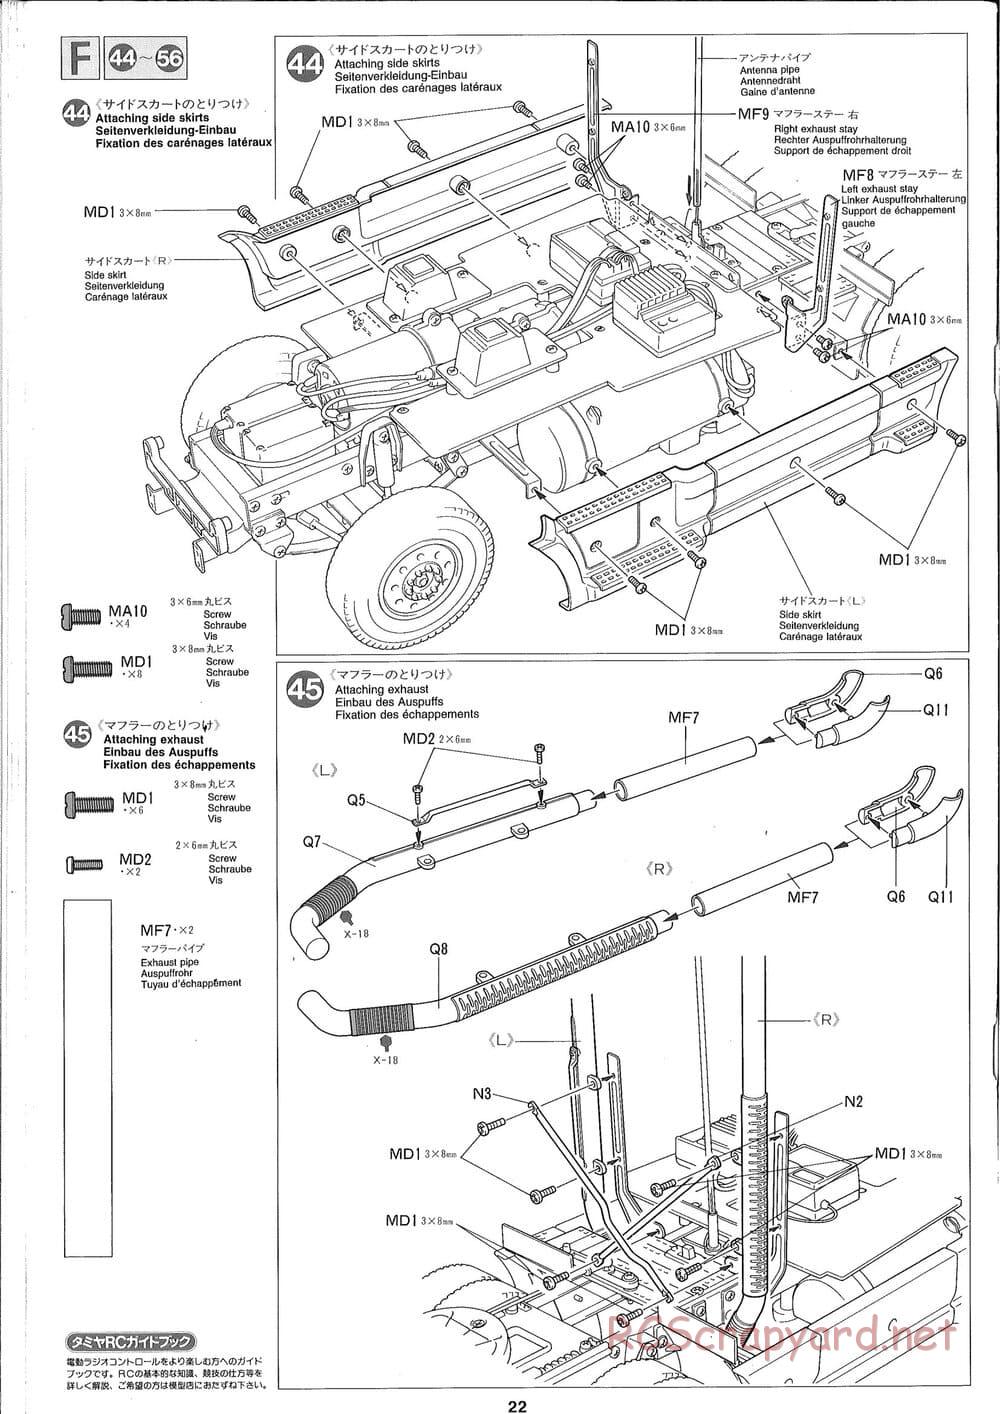 Tamiya - Ford Aeromax - Manual - Page 22